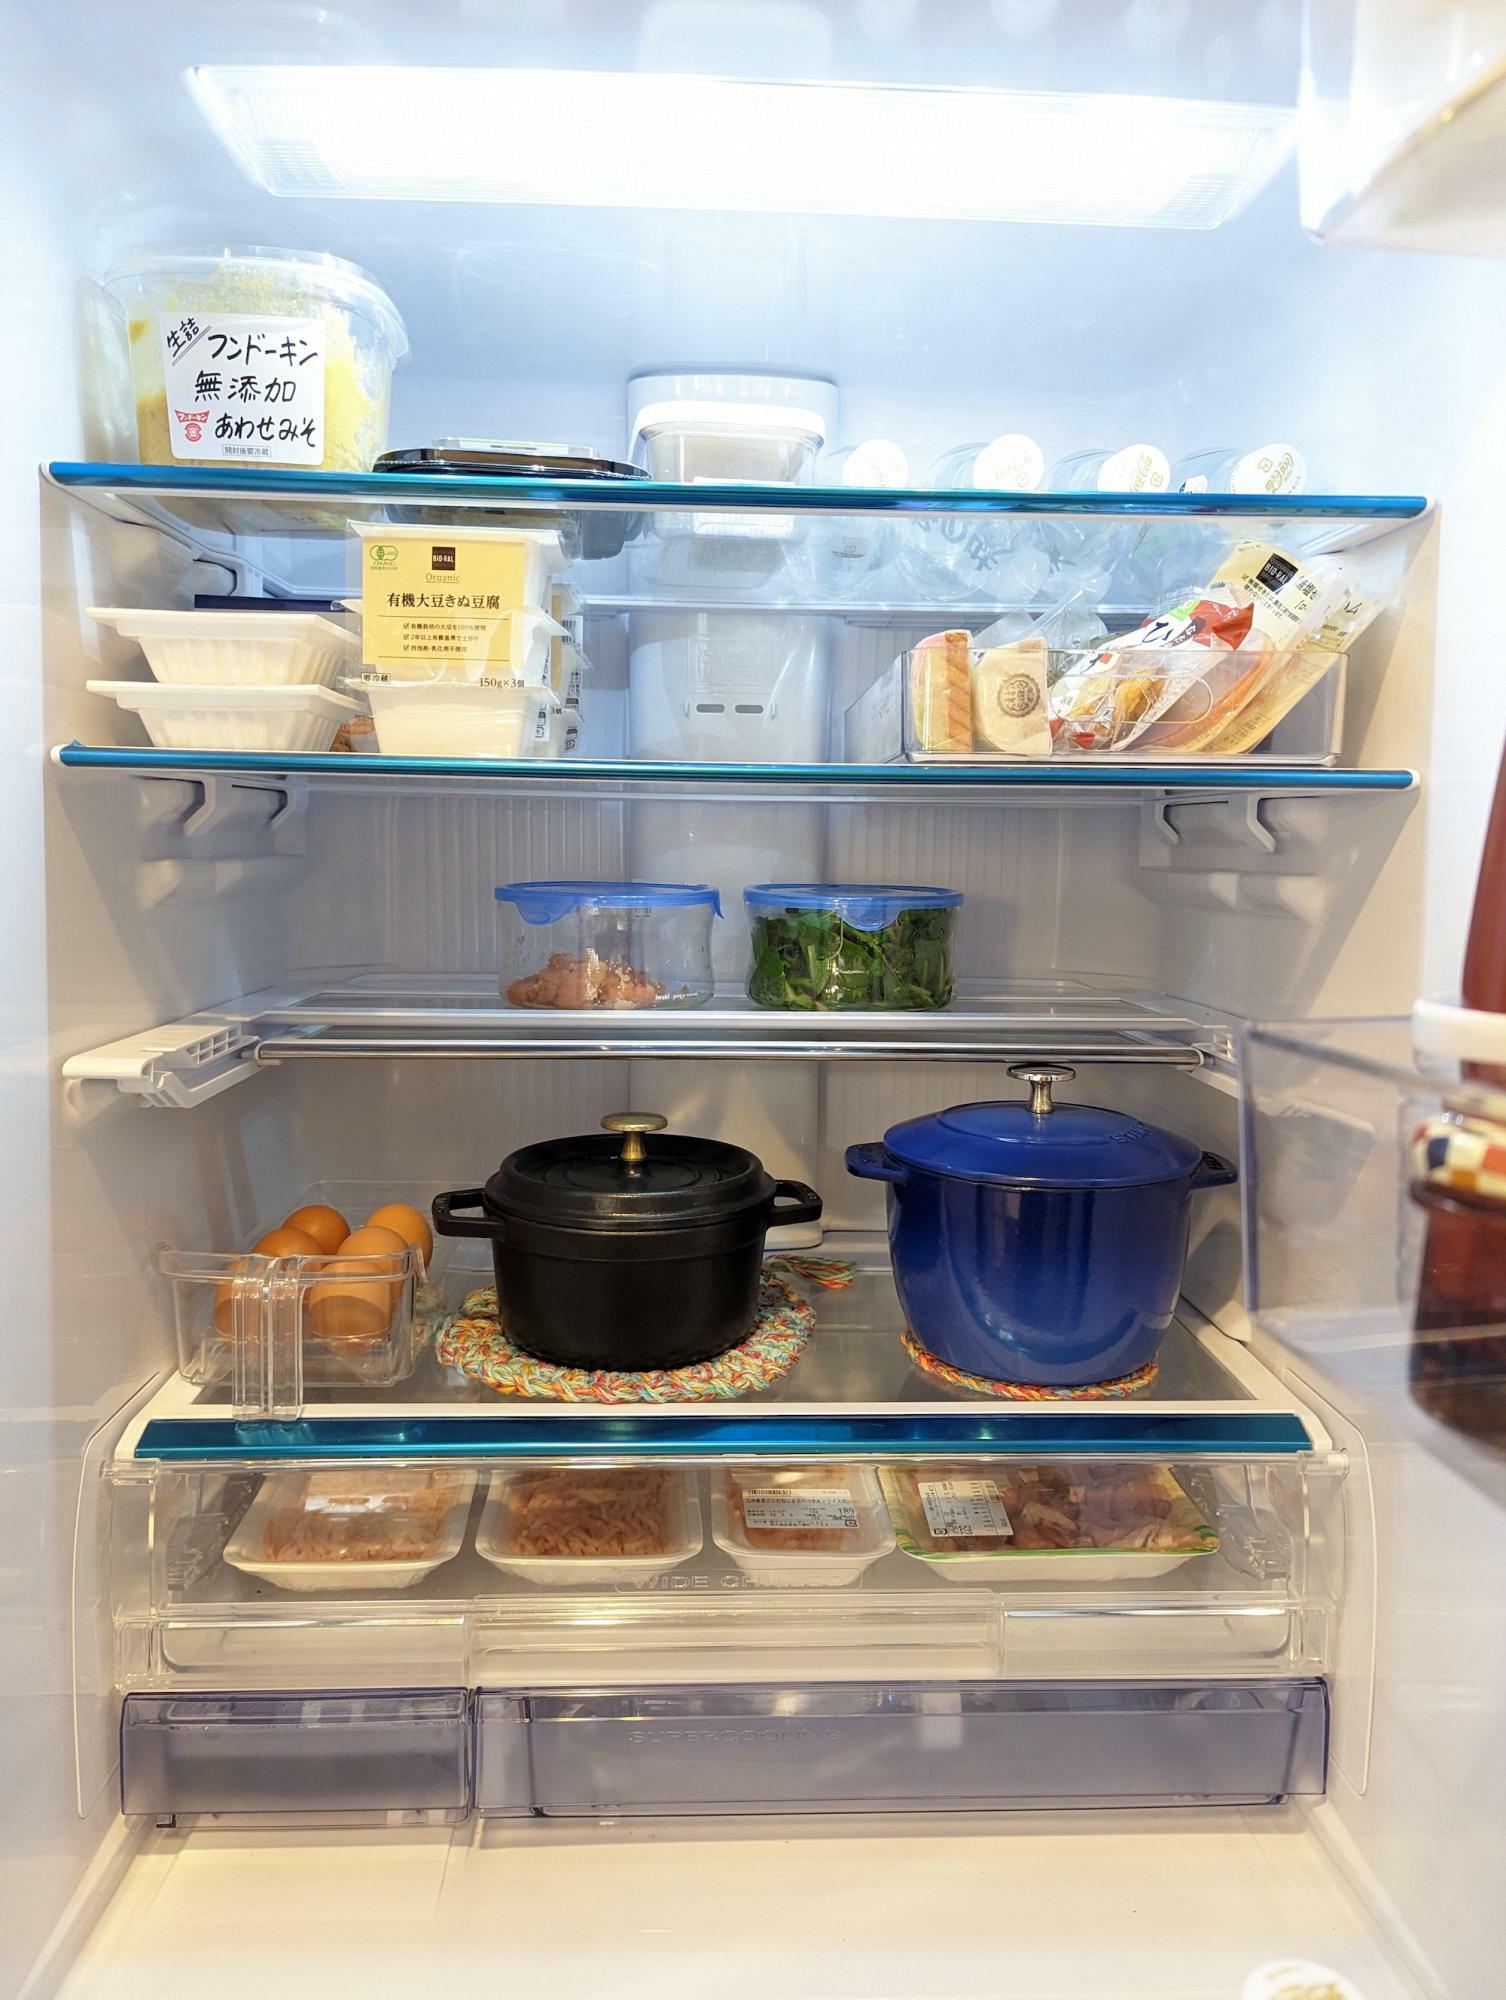 見えないものは無いのと同じだから、冷蔵庫の中は「スカスカ・透明・鍋ごと入れる」を心がけている。廃棄も減り、節約にもつながった。